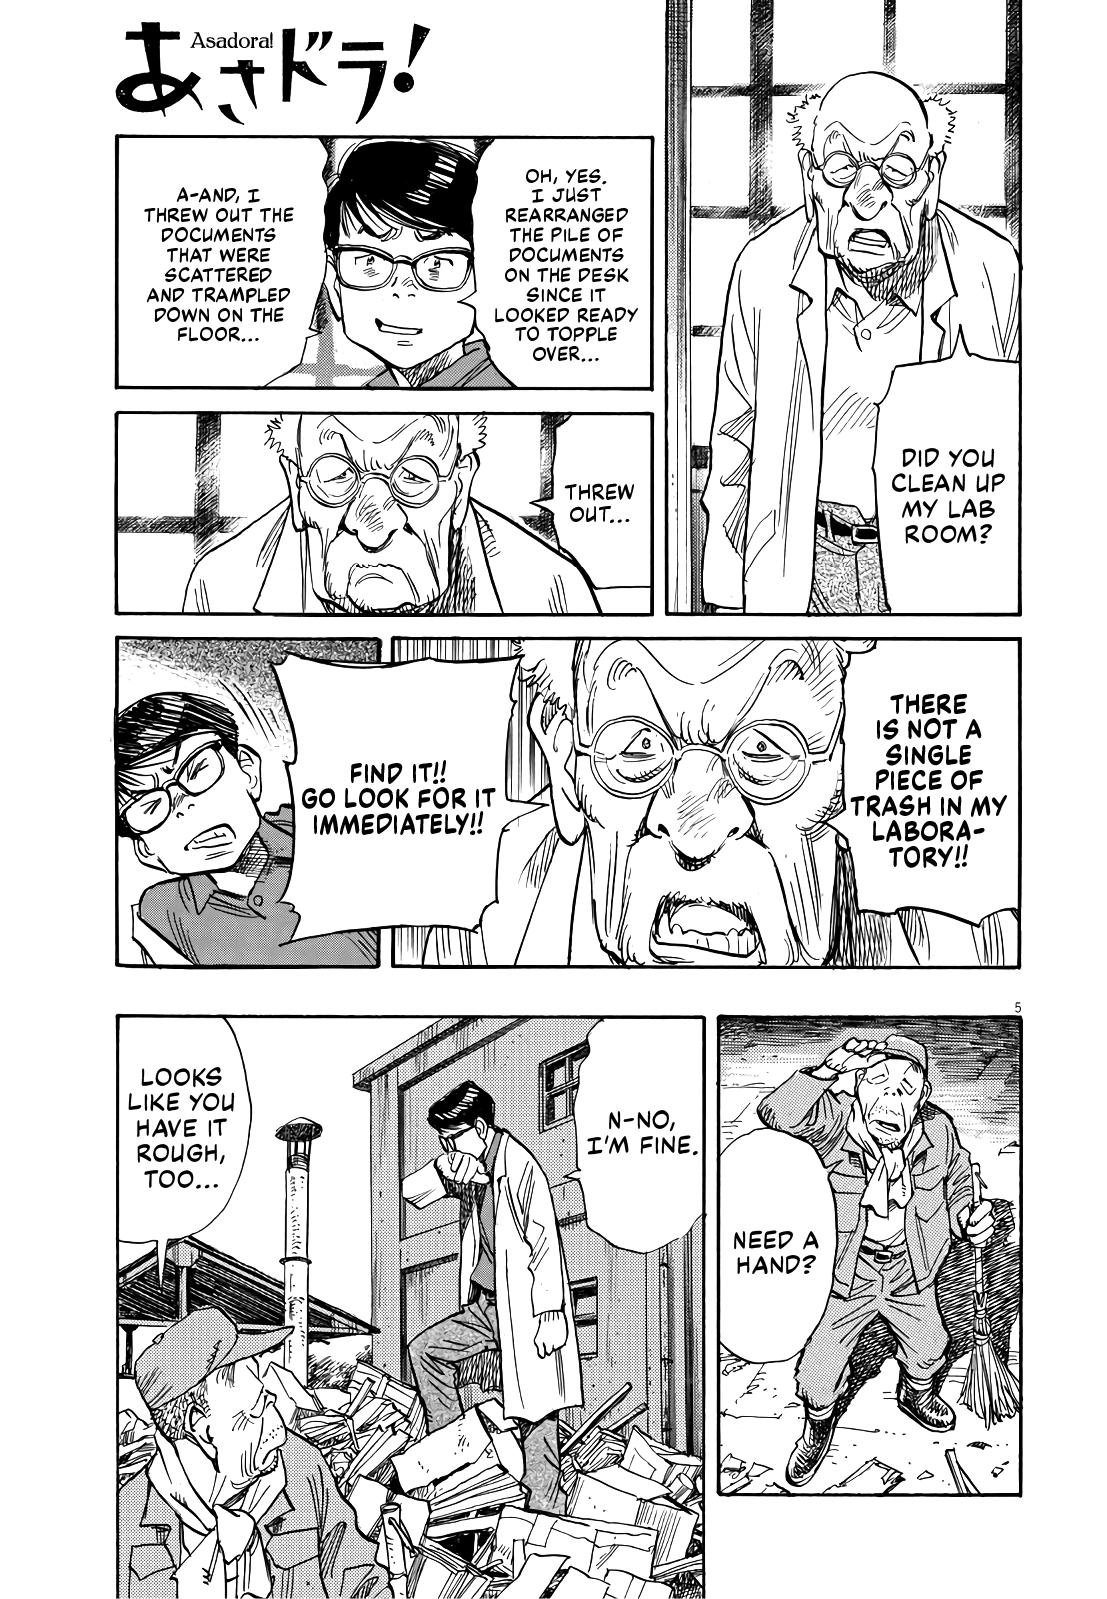 Renzoku Manga Shousetsu: Asadora! Capítulo 26 – Mangás Chan